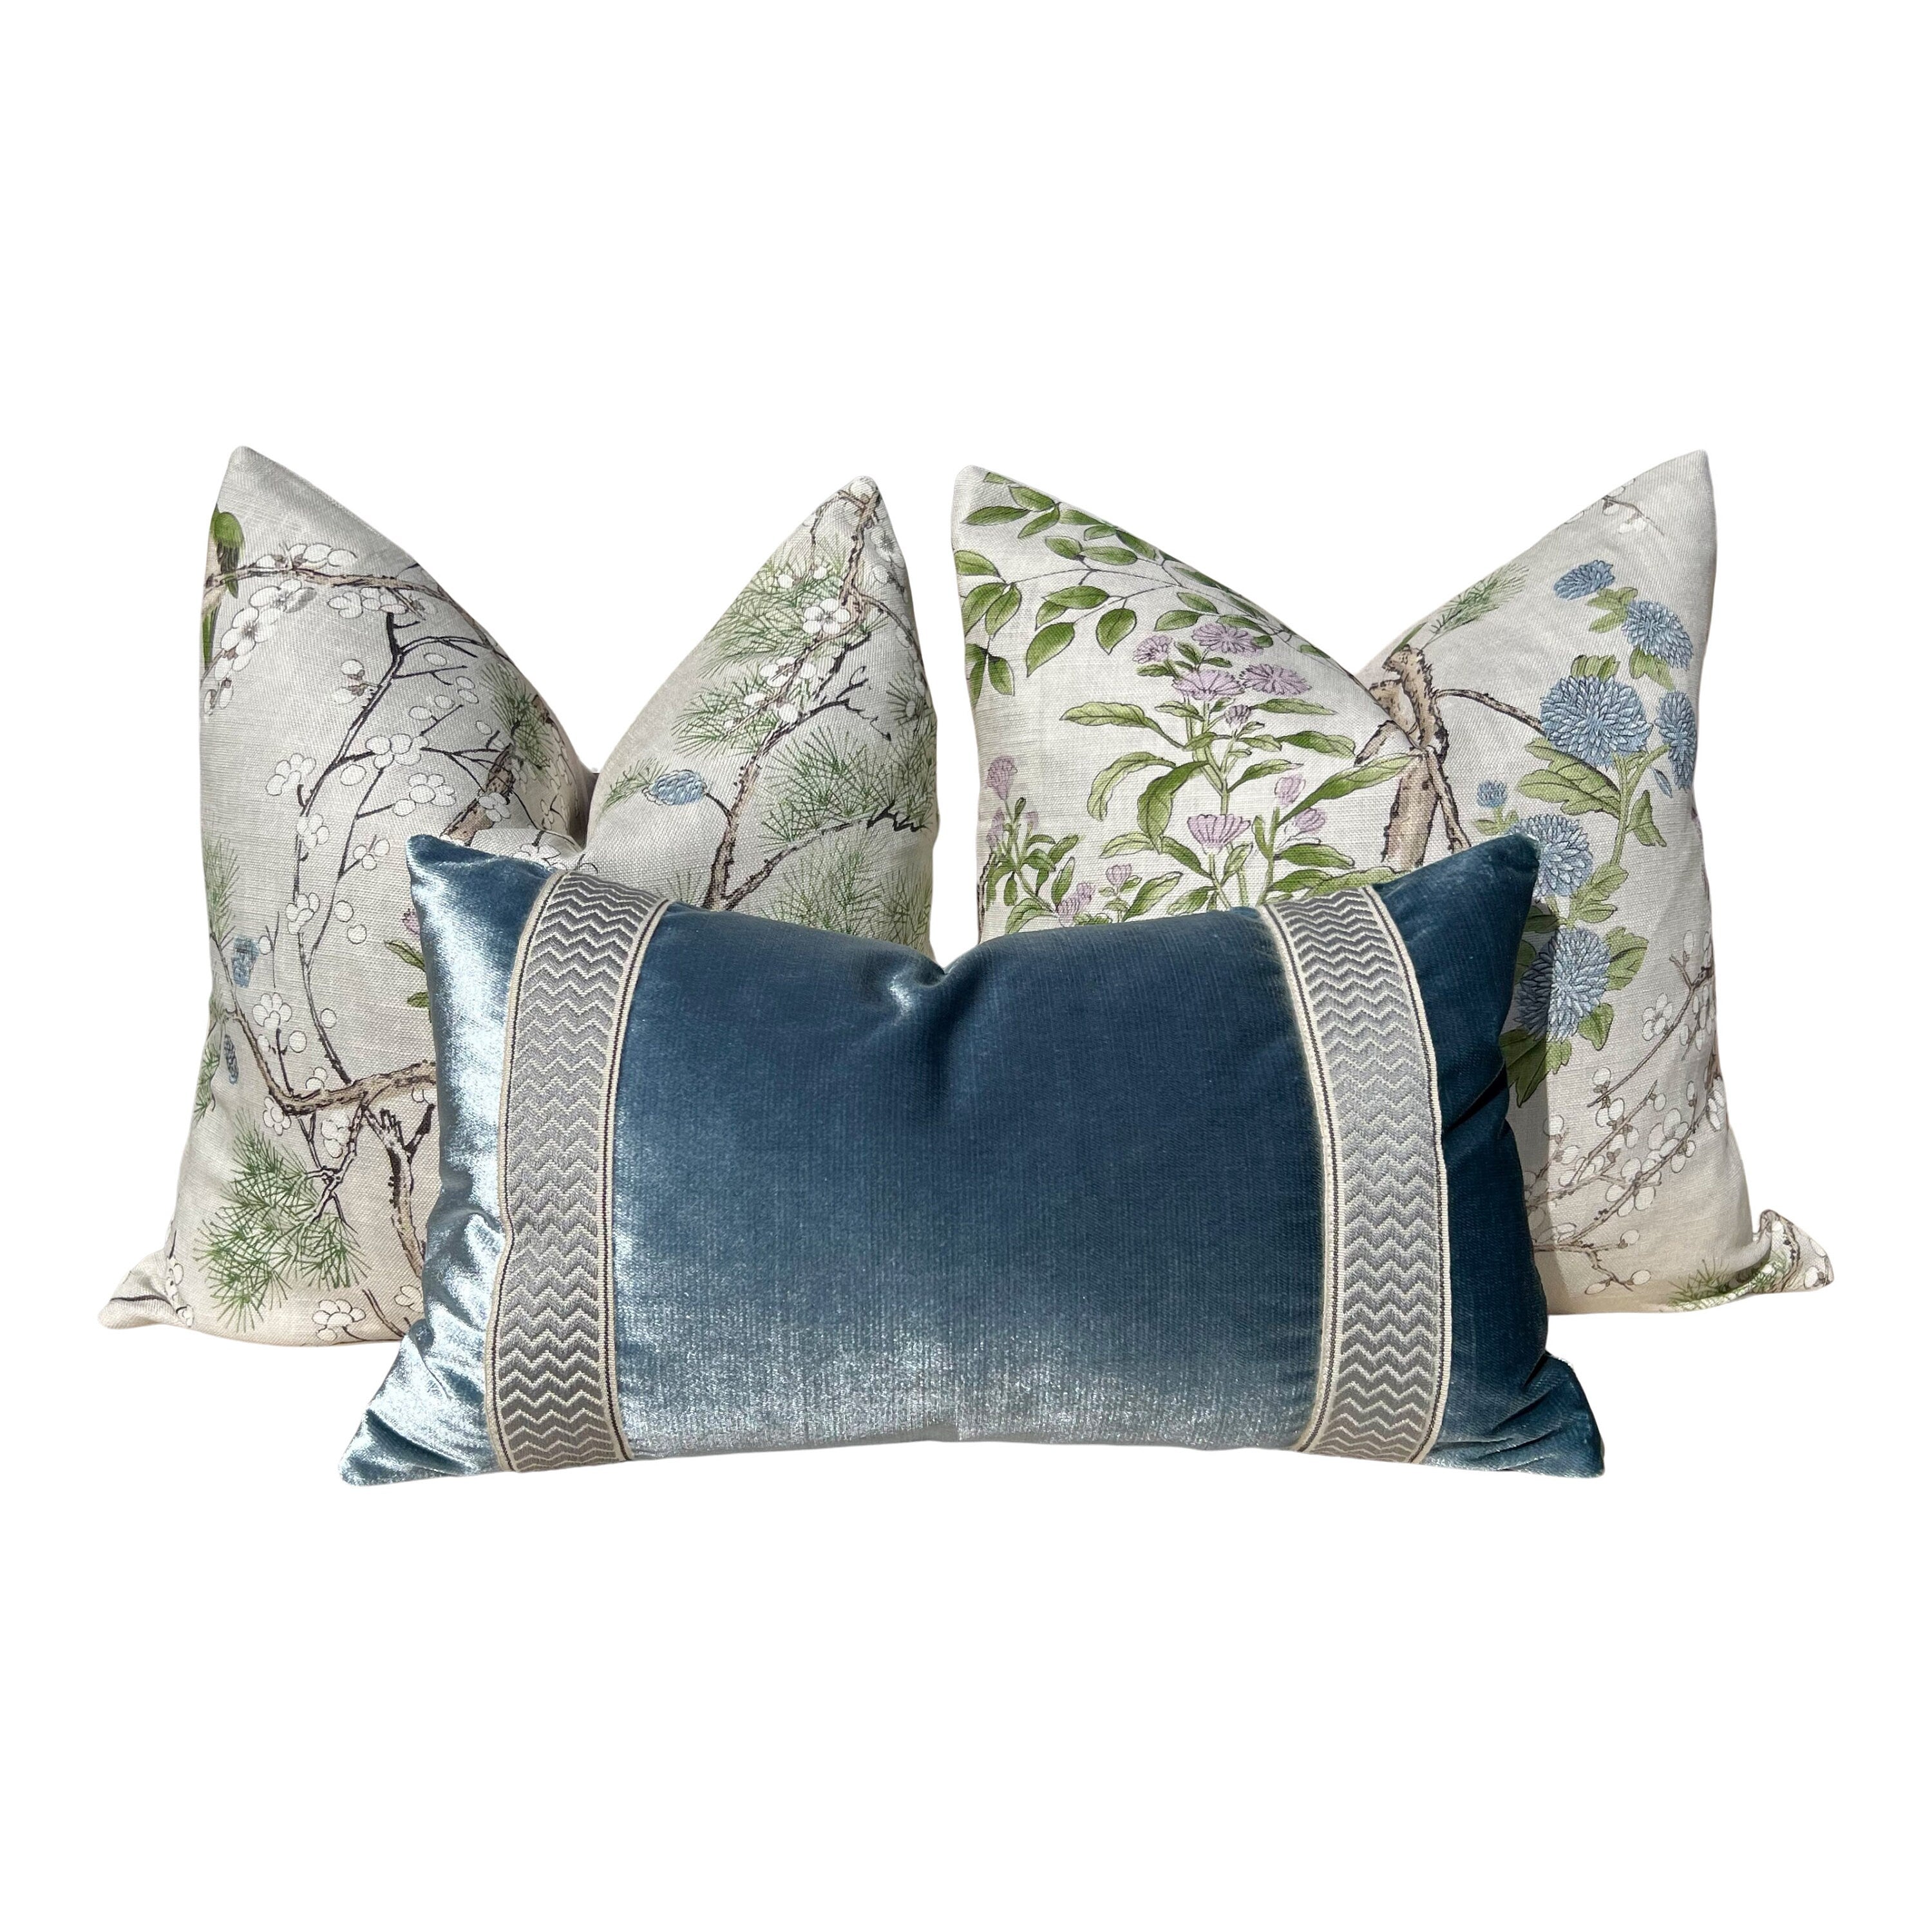 Katsura Pillow in Cream and Lavender. Designer Pillows, High End Floral Pillows, Euro Sham Cover, Decorative Lumbar Pillows, Bedroom Decor